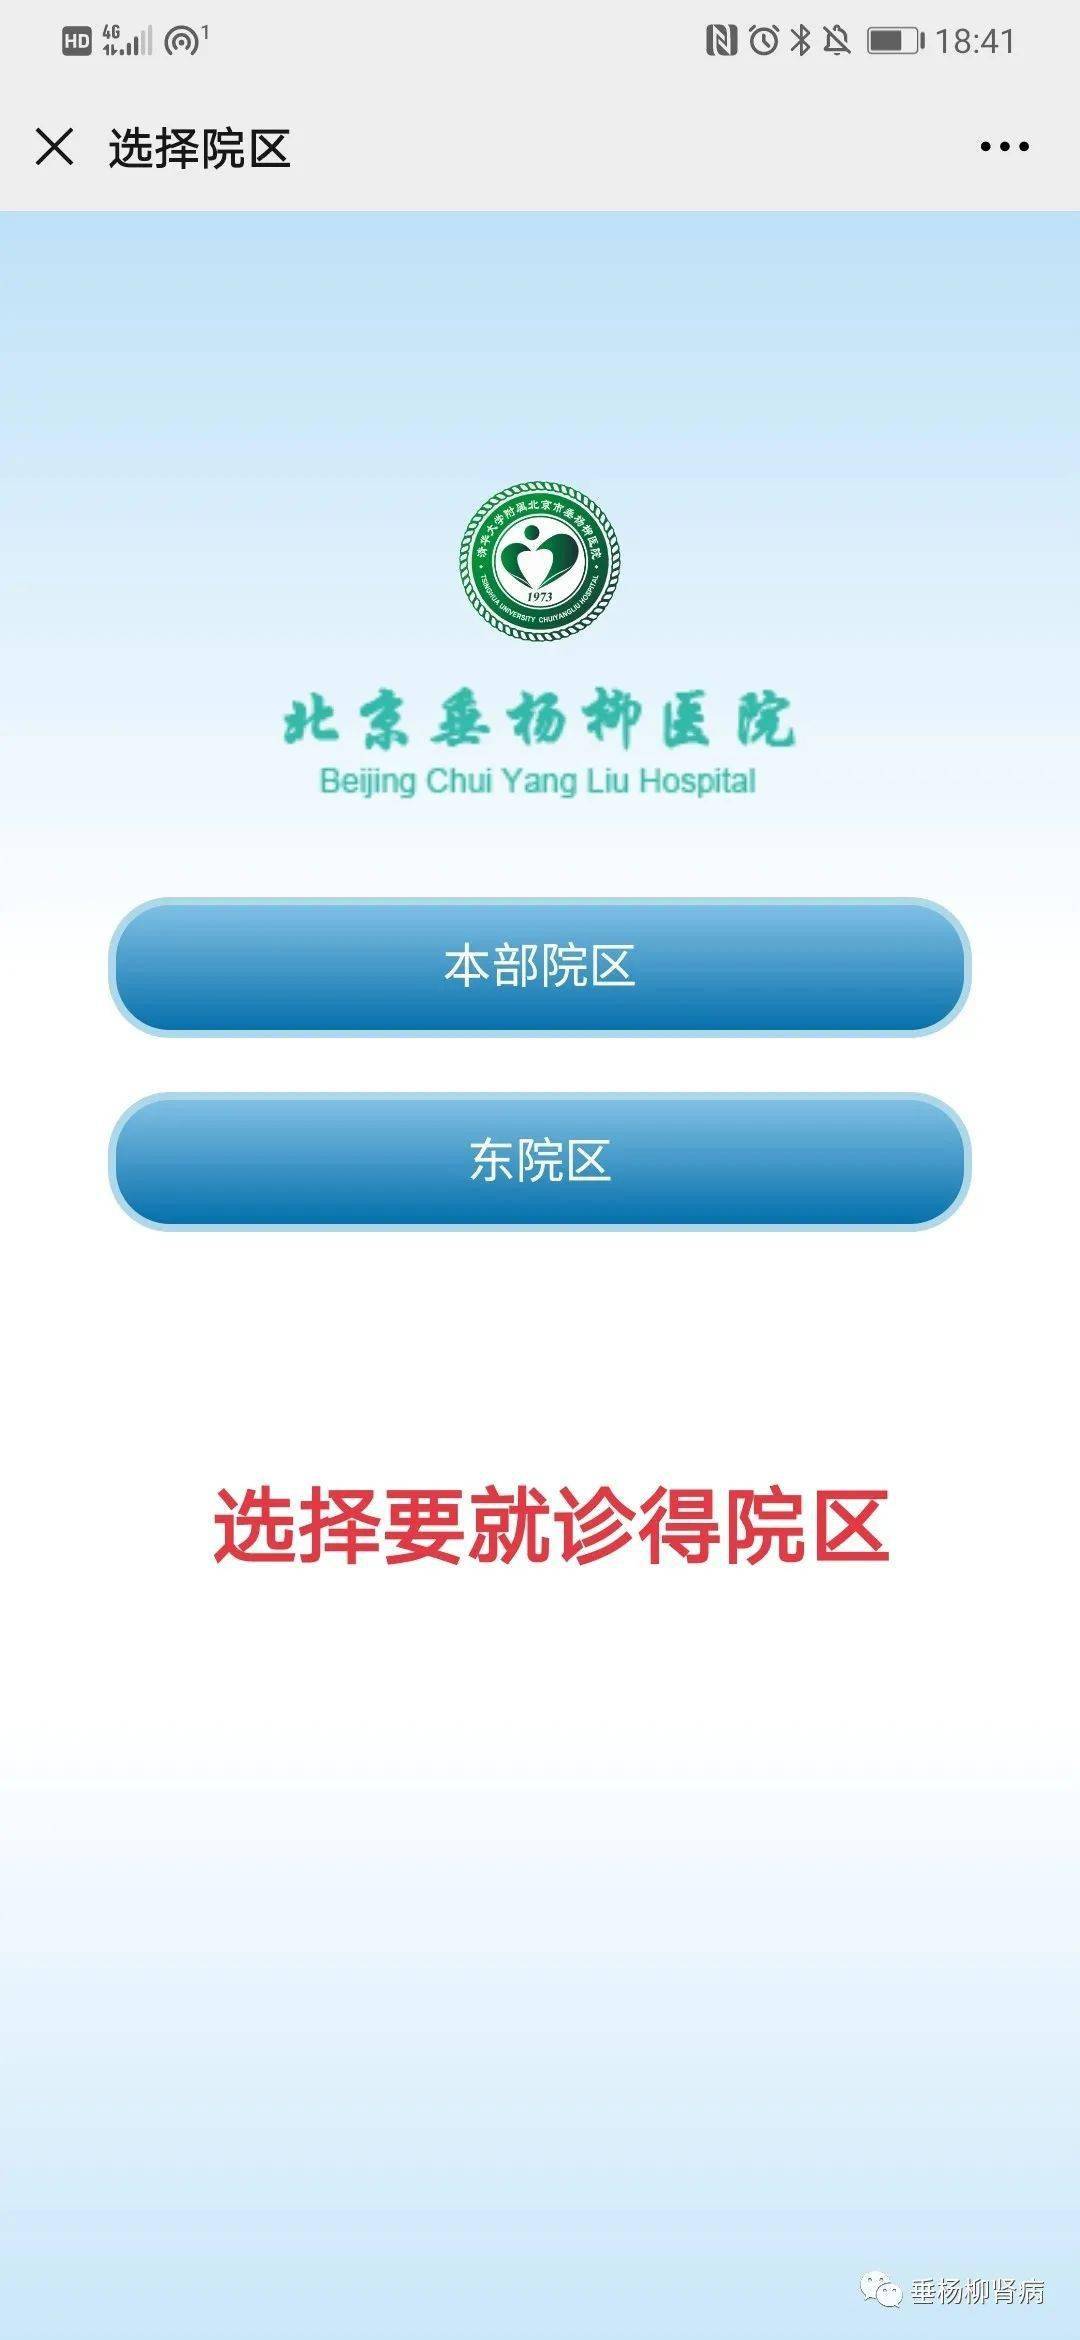 北京市大兴区人民医院号贩子挂号,安全快速有效联系方式哪家好的简单介绍